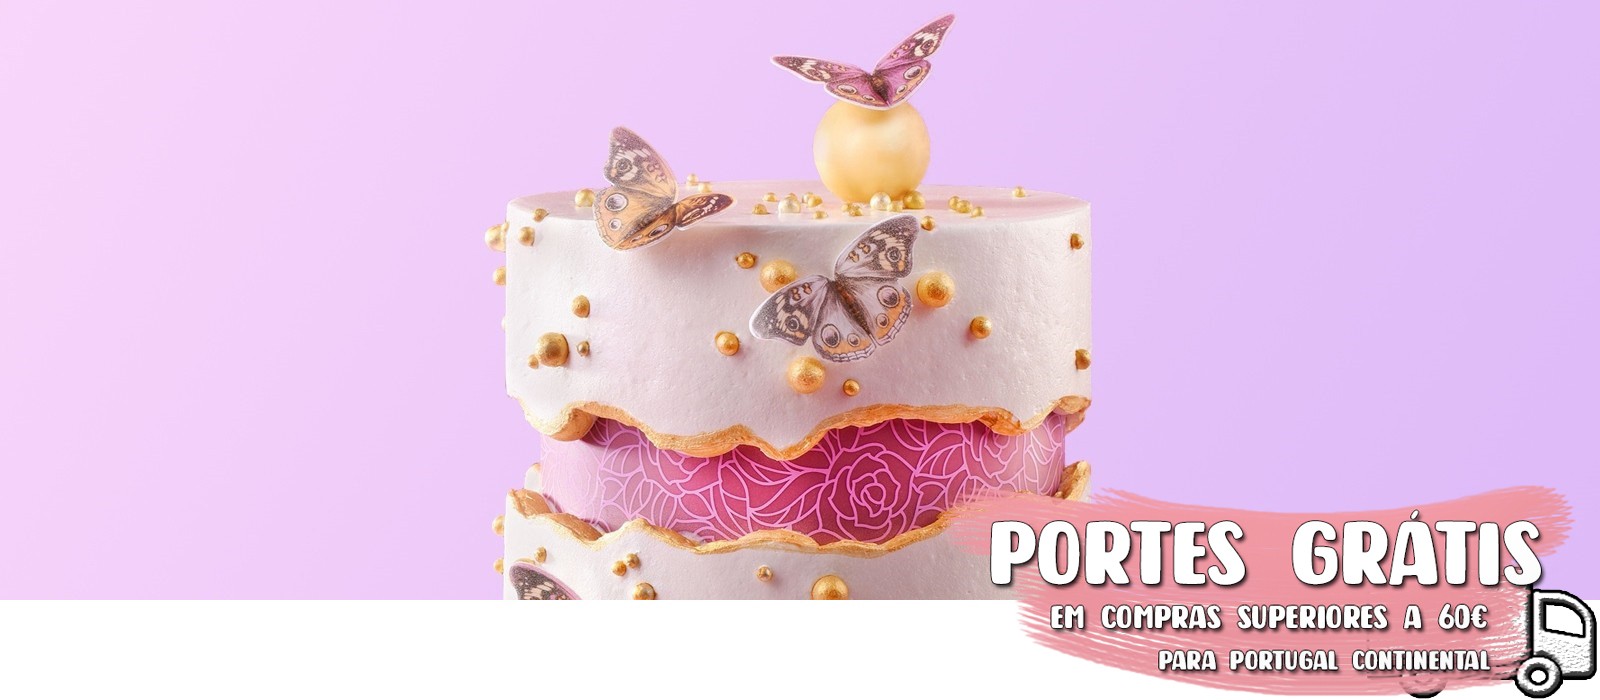 Preciosos cakes - Bolo de chantilly! Minecraft! Topper